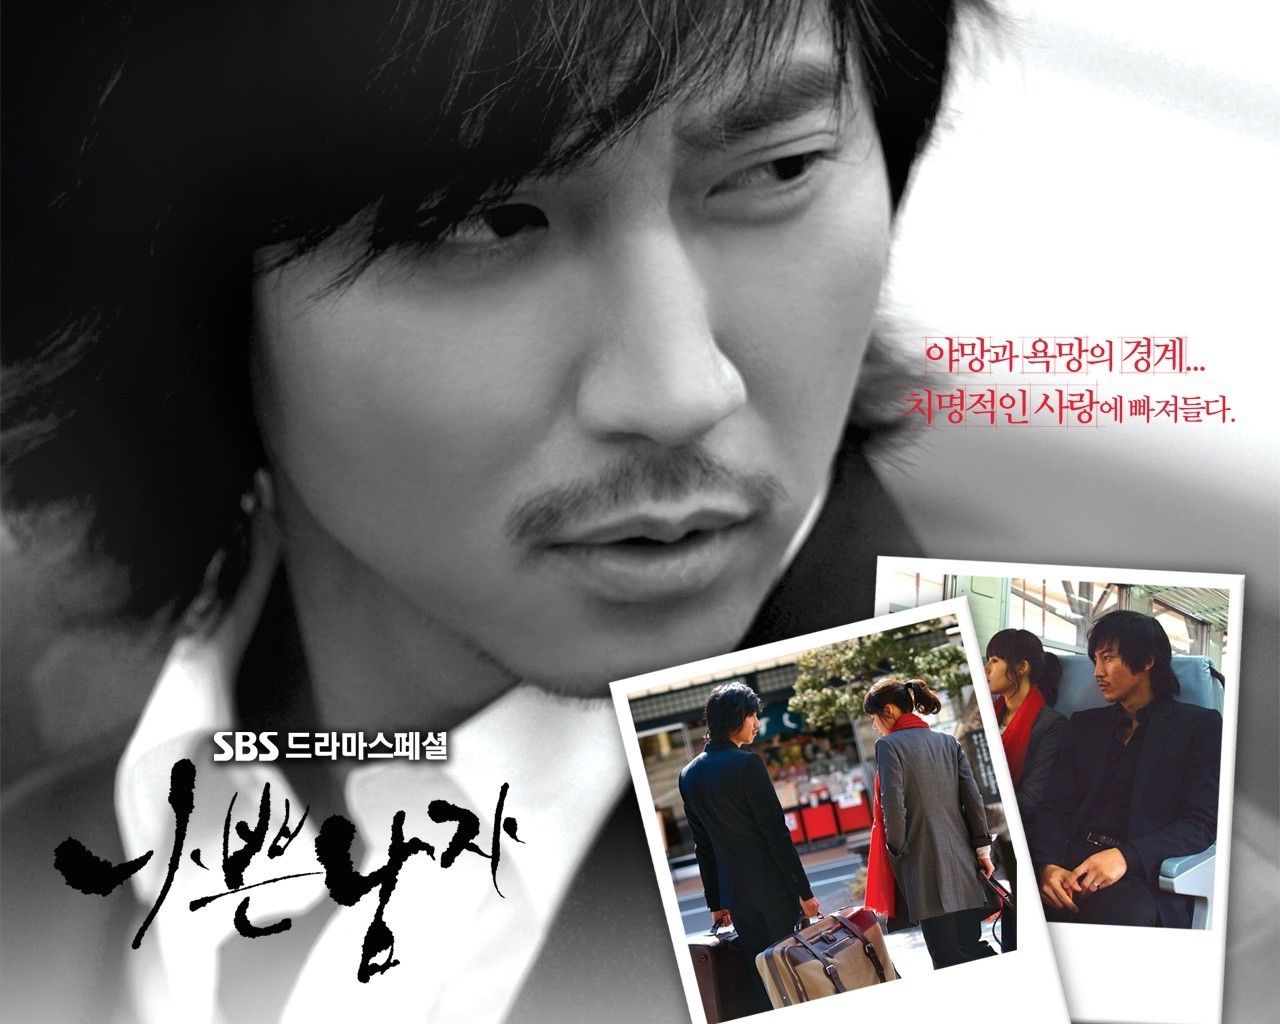 Bad guy - Korean Dramas Wallpaper 21700370 - Fanpop